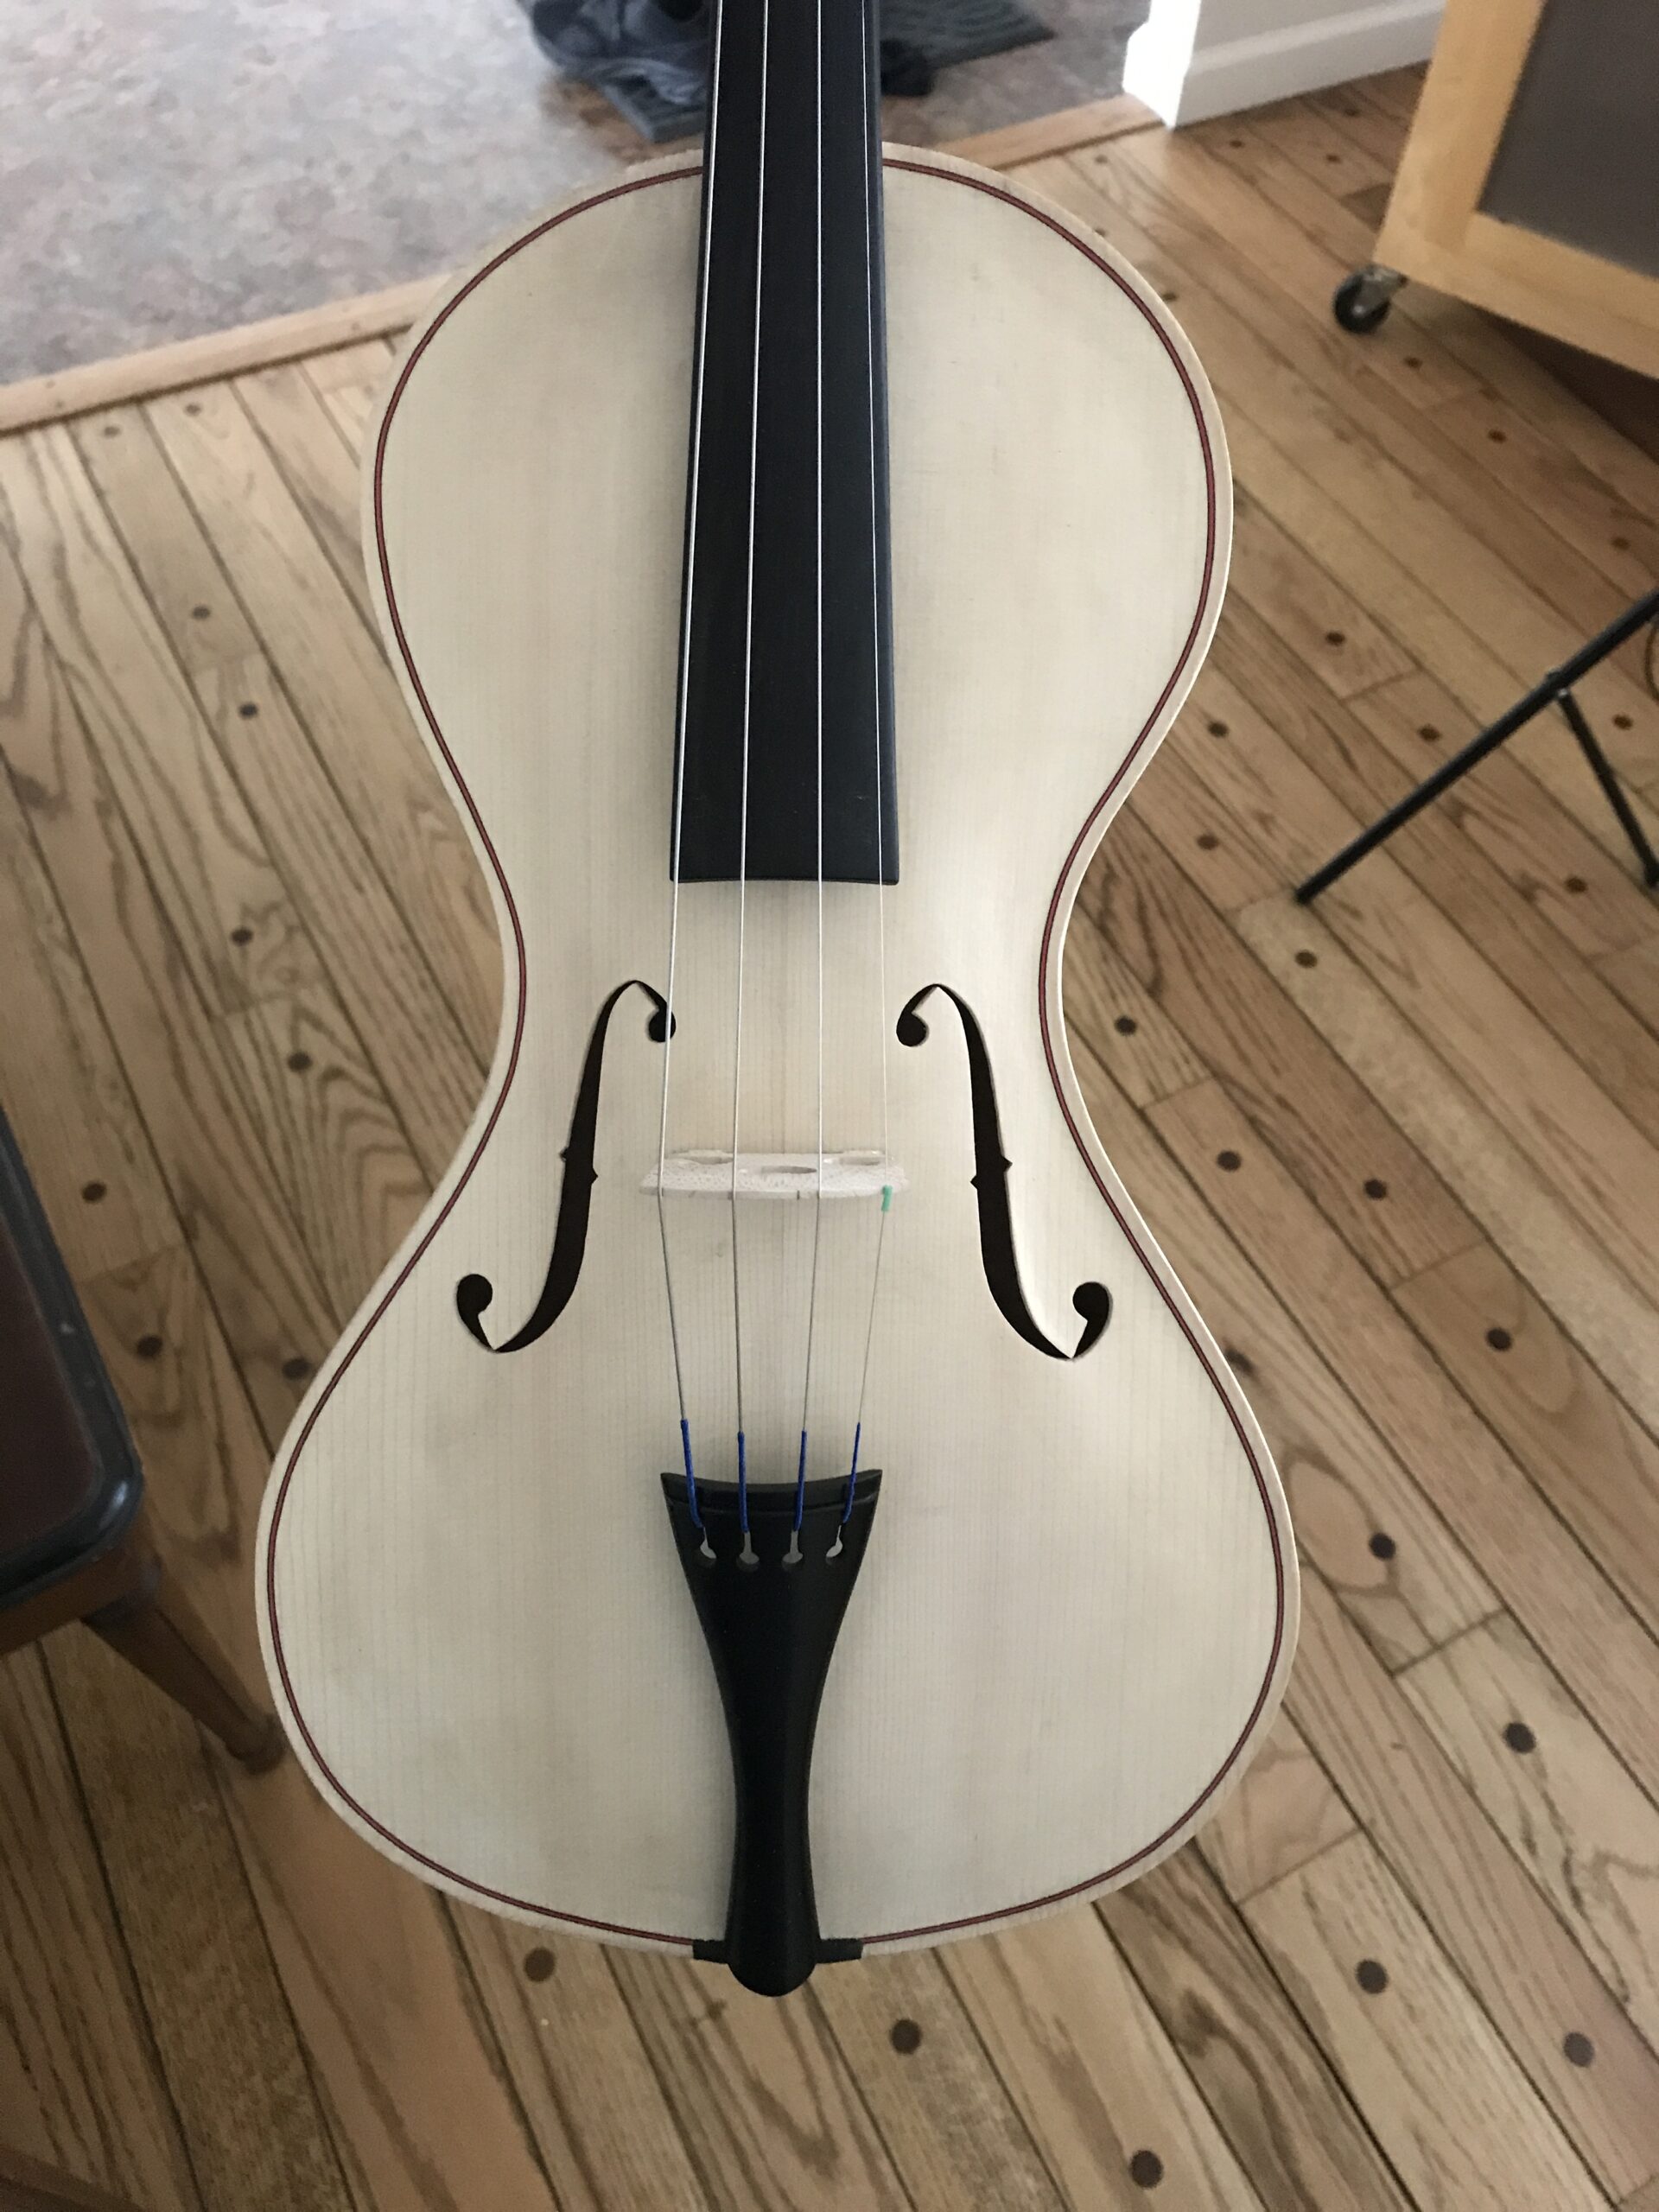 A violin in the white